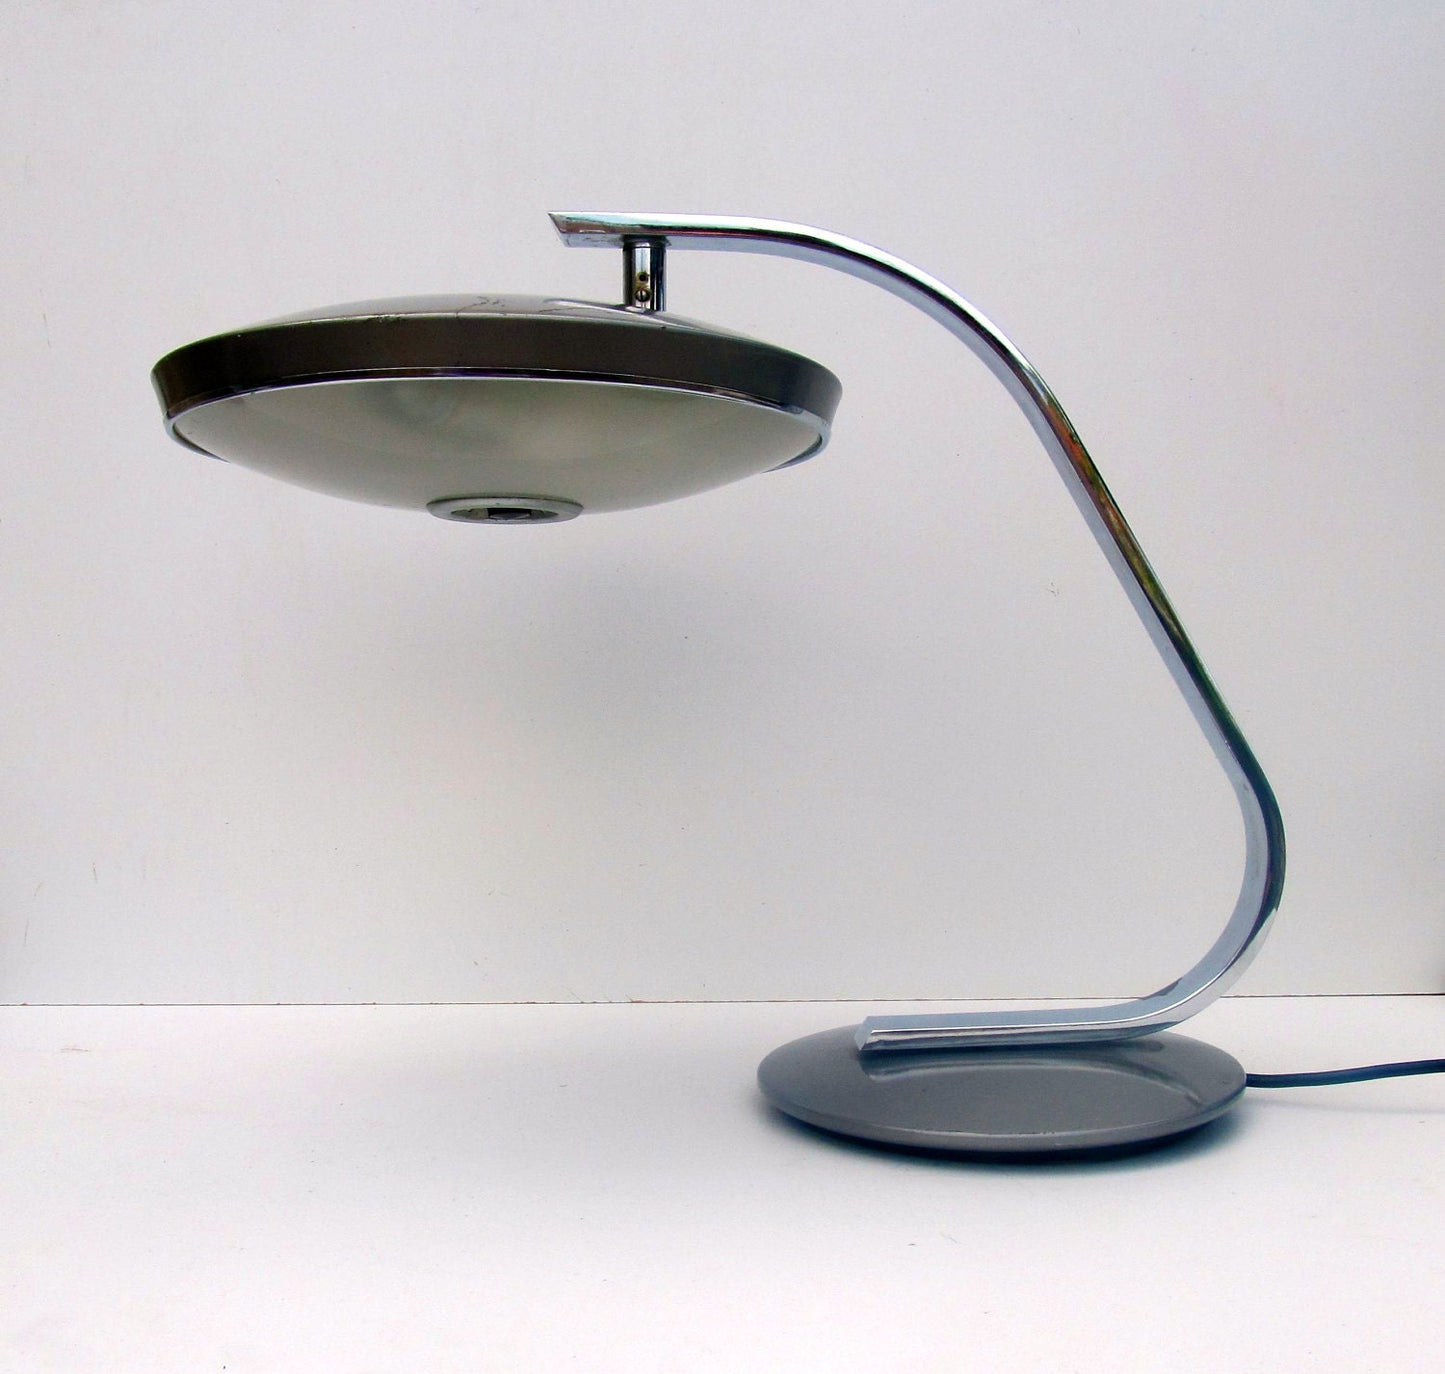 Fase Lamp Madrid space age Tafel- of bureaulamp, Spaanse modernistische lamp uit het midden van de eeuw uit de jaren 70